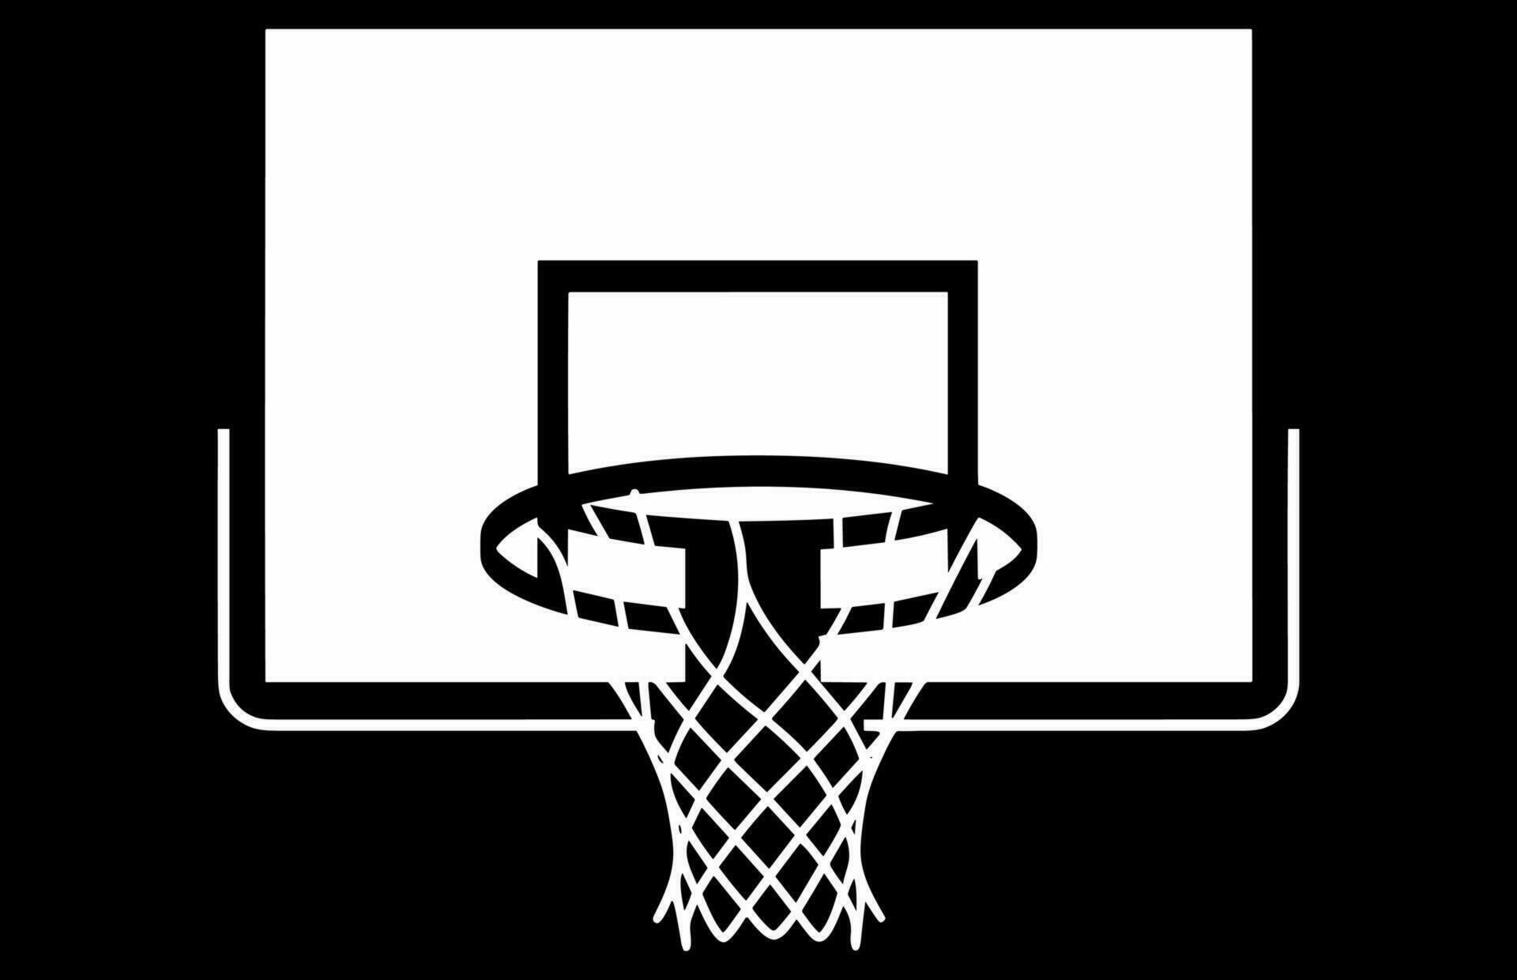 pallacanestro cerchio vettore illustrazione, vettore silhouette di pallacanestro cerchio